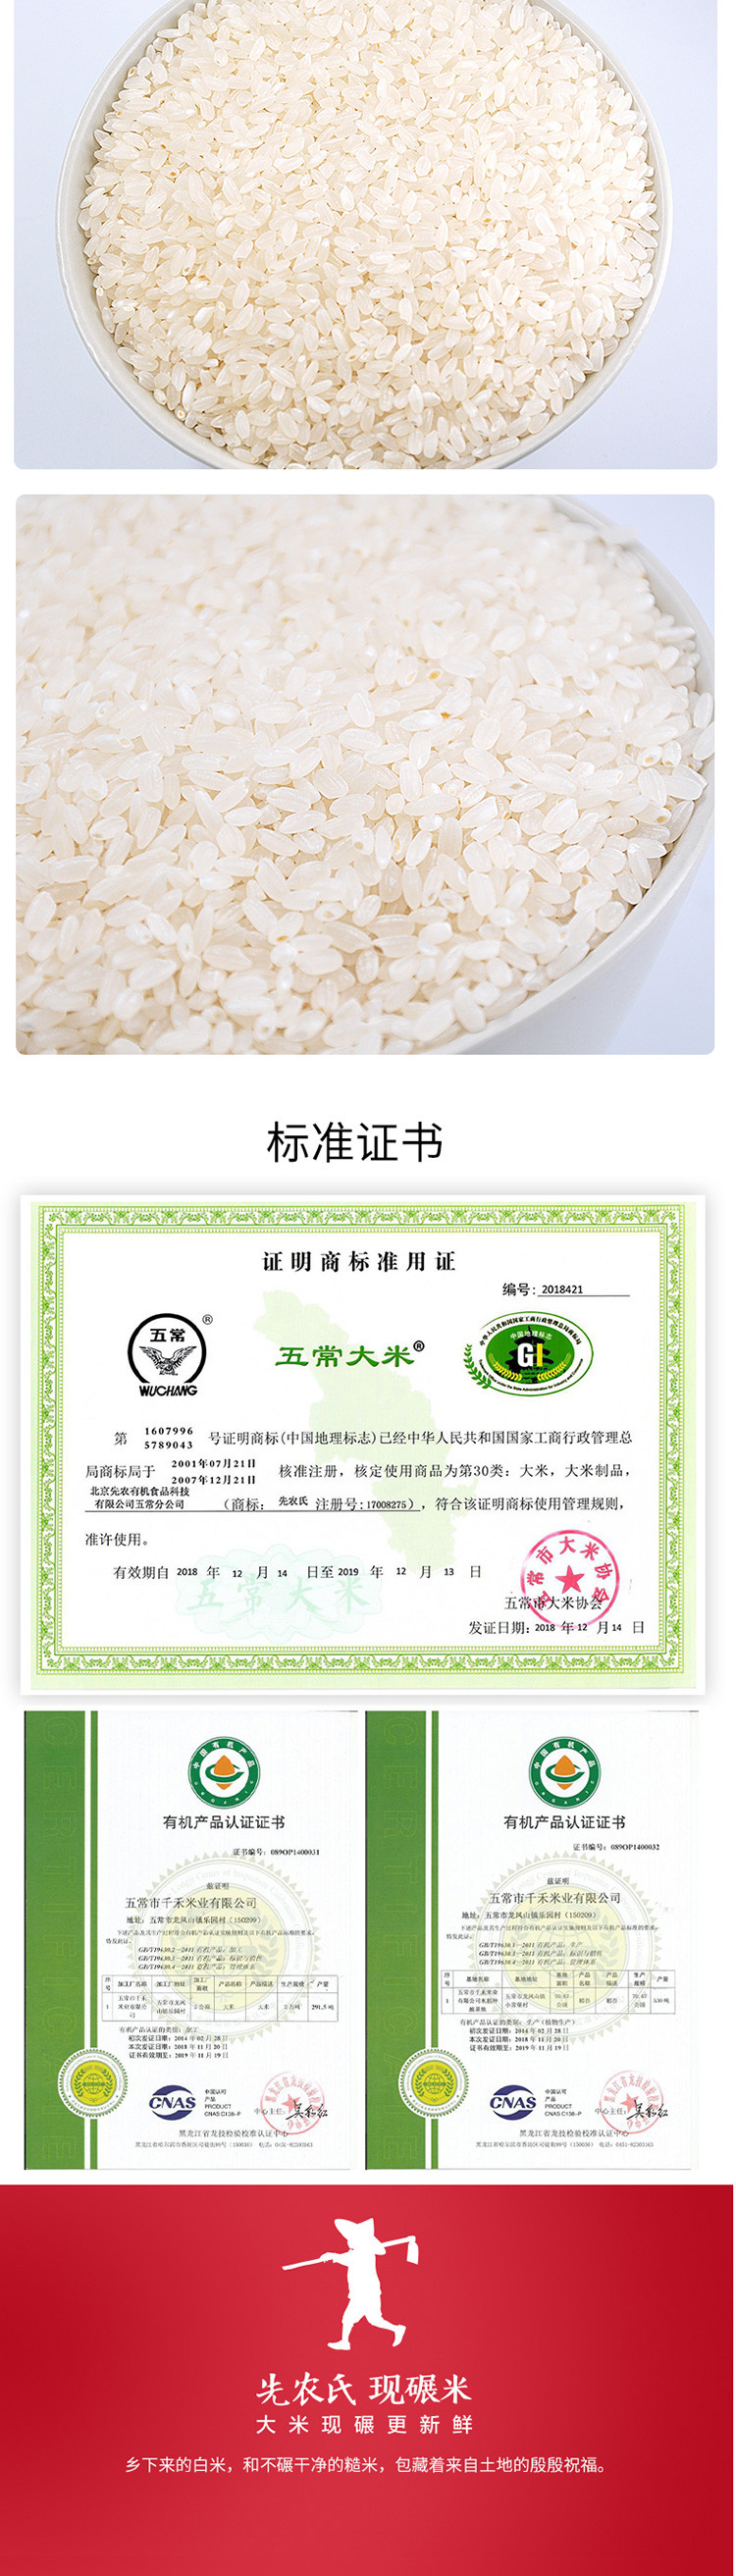 先农氏 五常稻花香4kg 东北黑龙江大米有机大米 现碾新米10分度